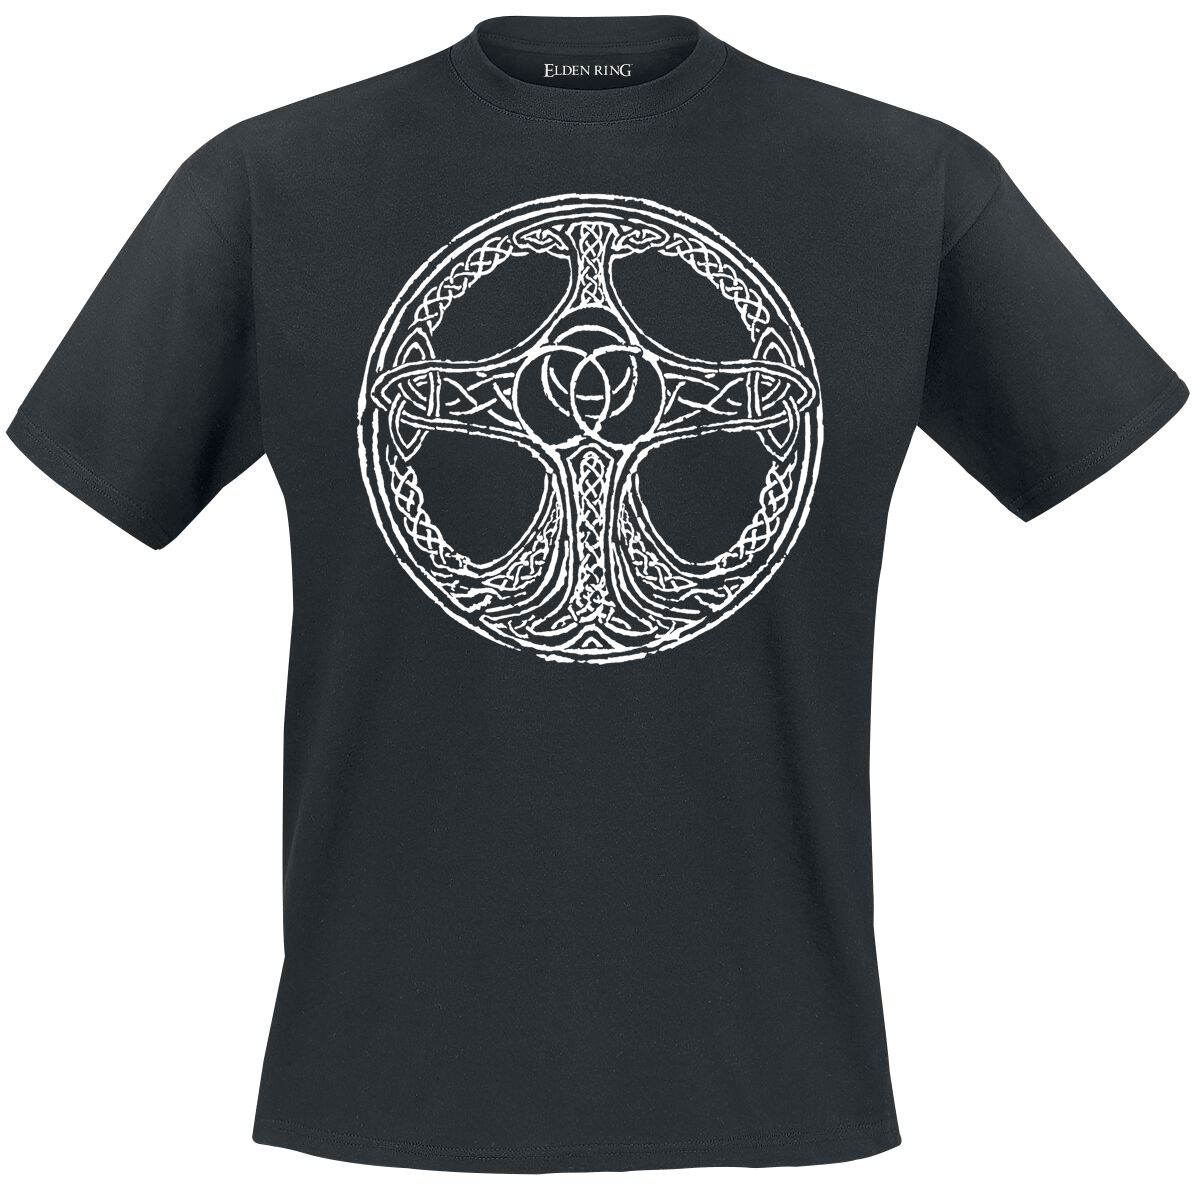 Elden Ring - Gaming T-Shirt - Erdtree - S bis XXL - für Männer - Größe XXL - schwarz  - EMP exklusives Merchandise!